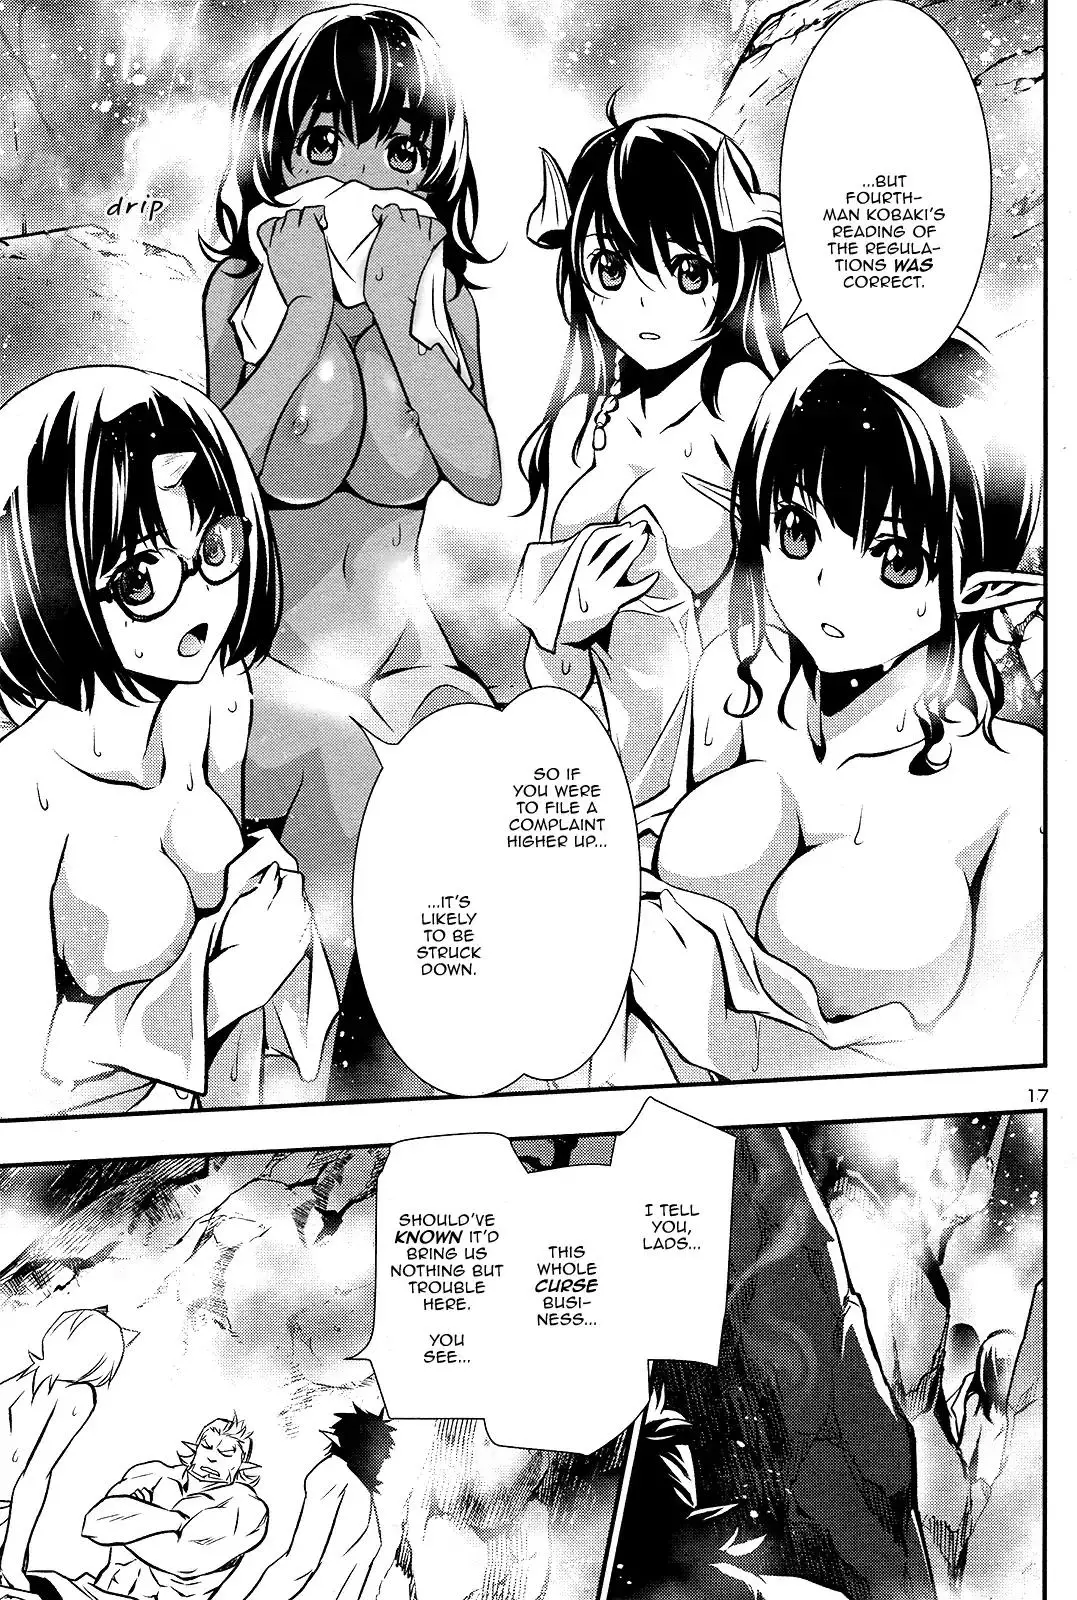 Shinju no Nectar - 24 page 16